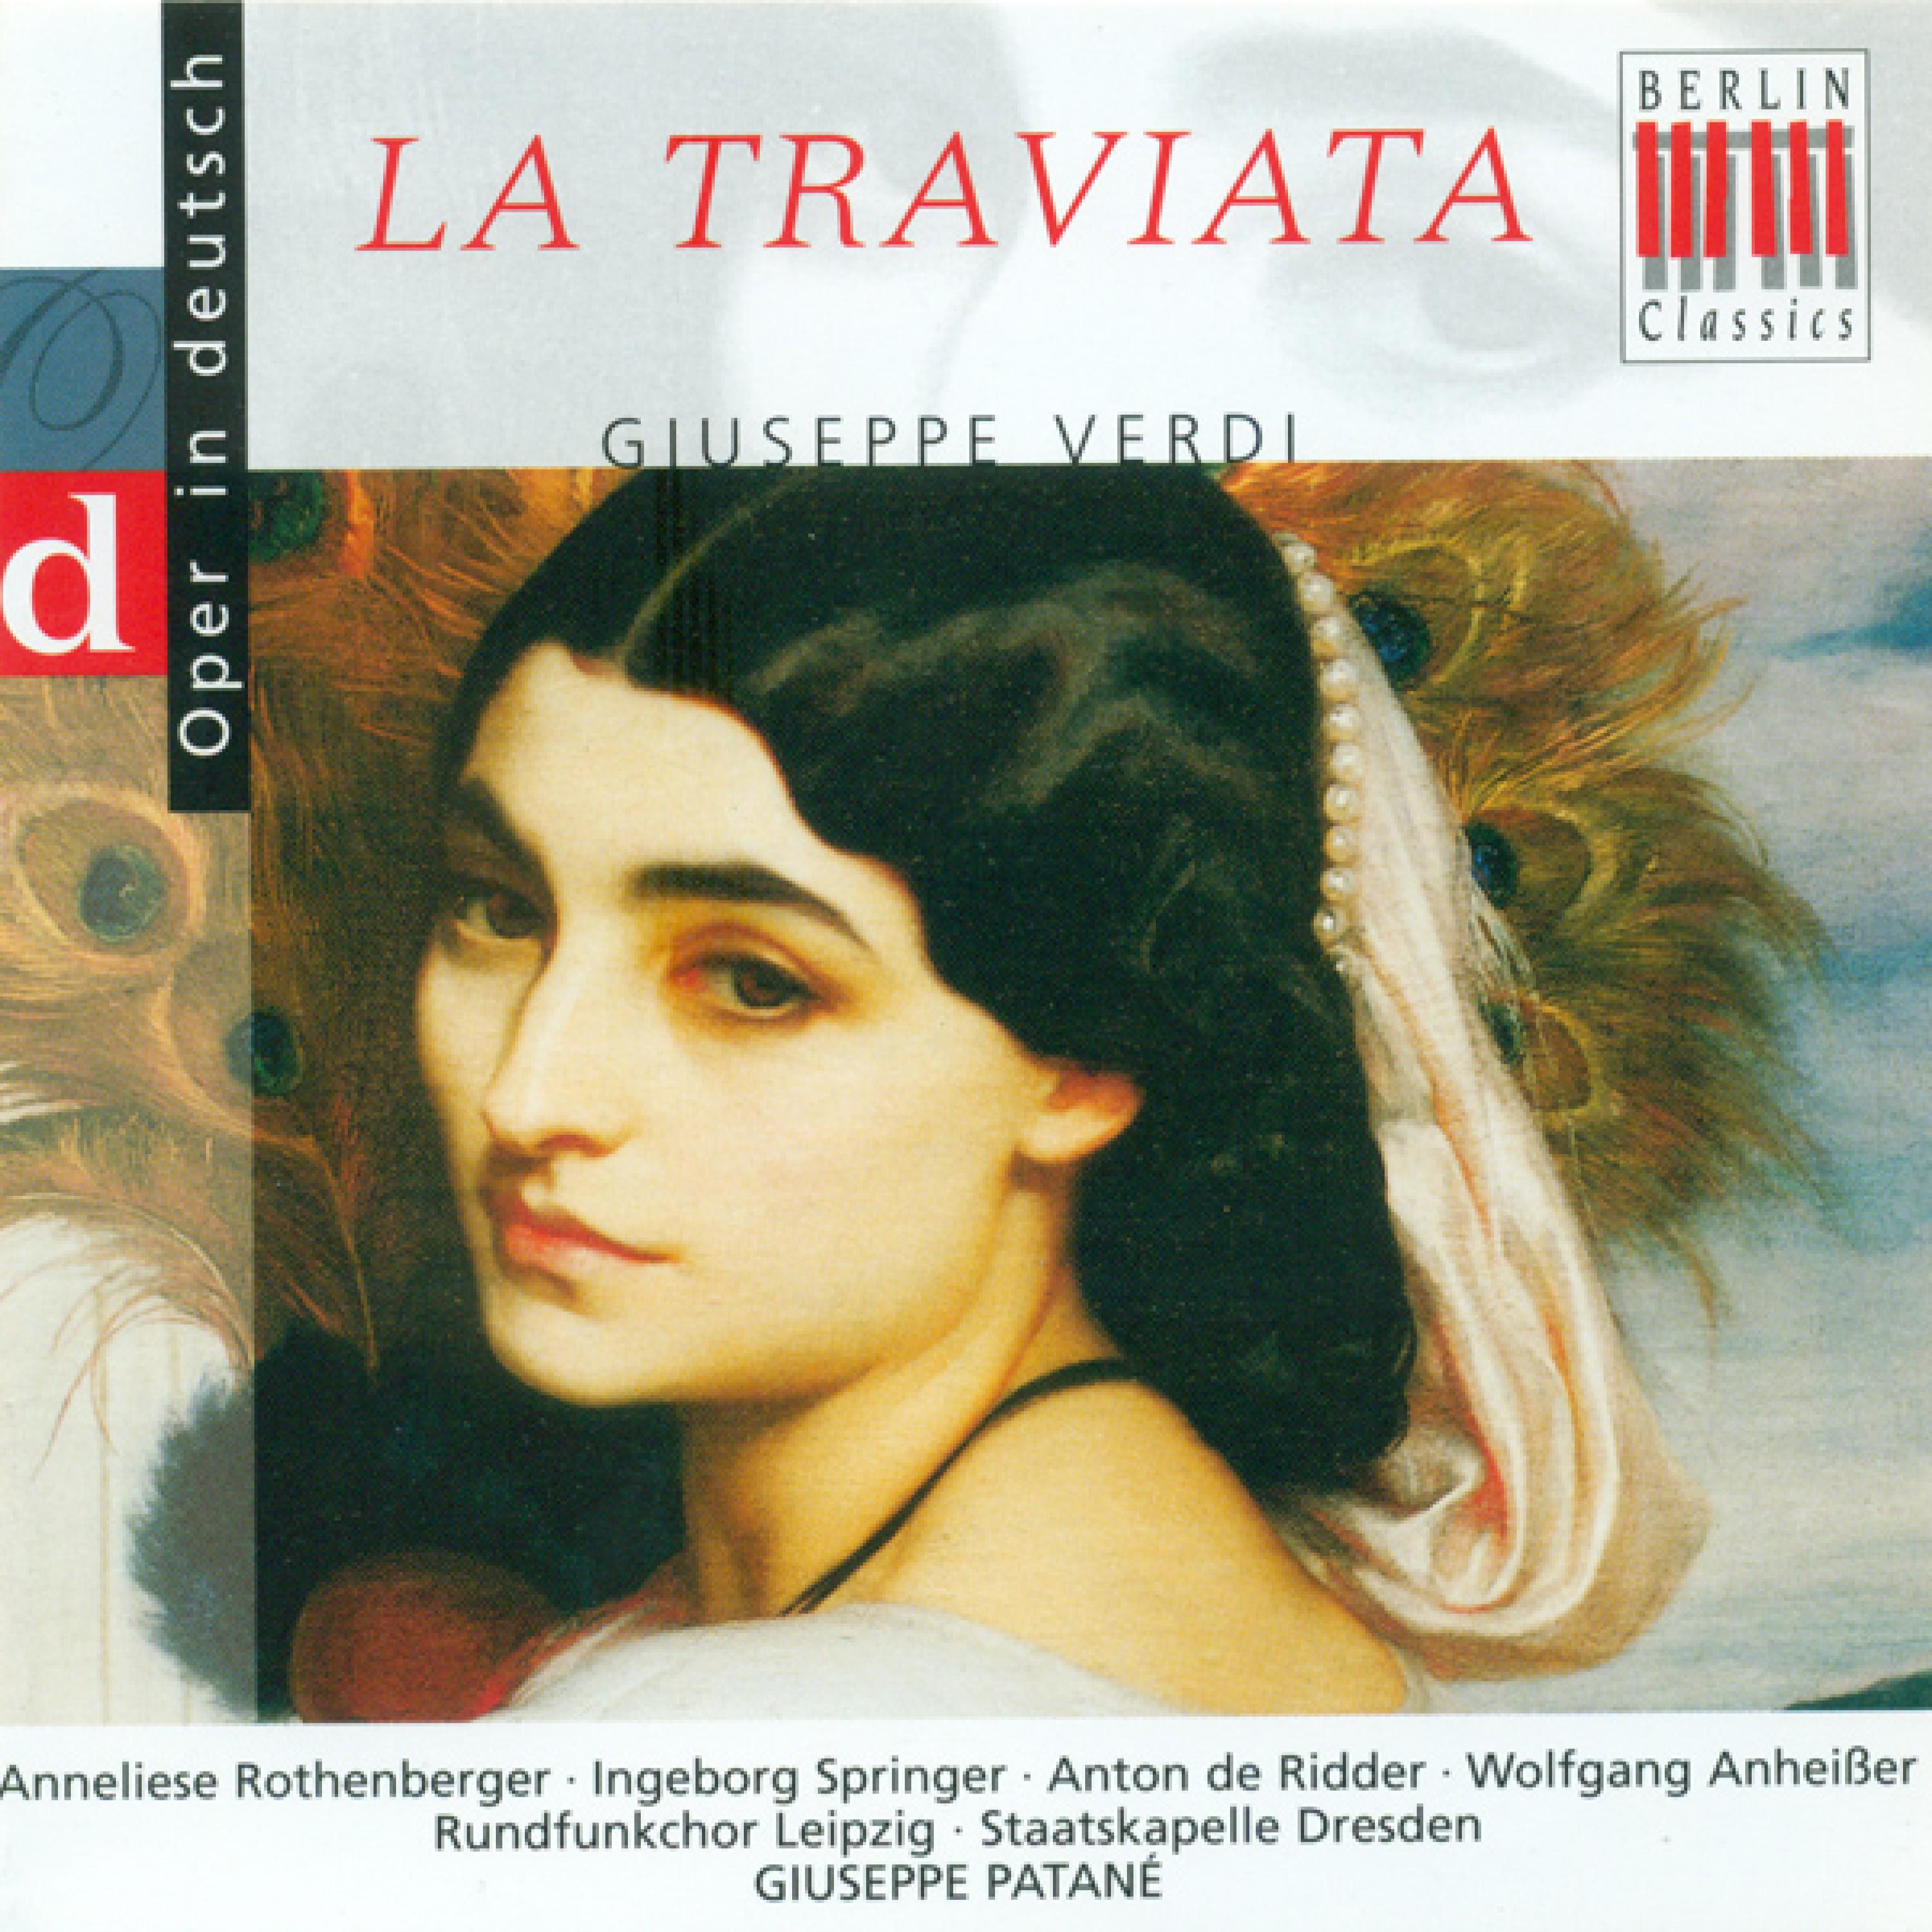 La Traviata, Act II: "Auch eine Tochter gab mir Gott"